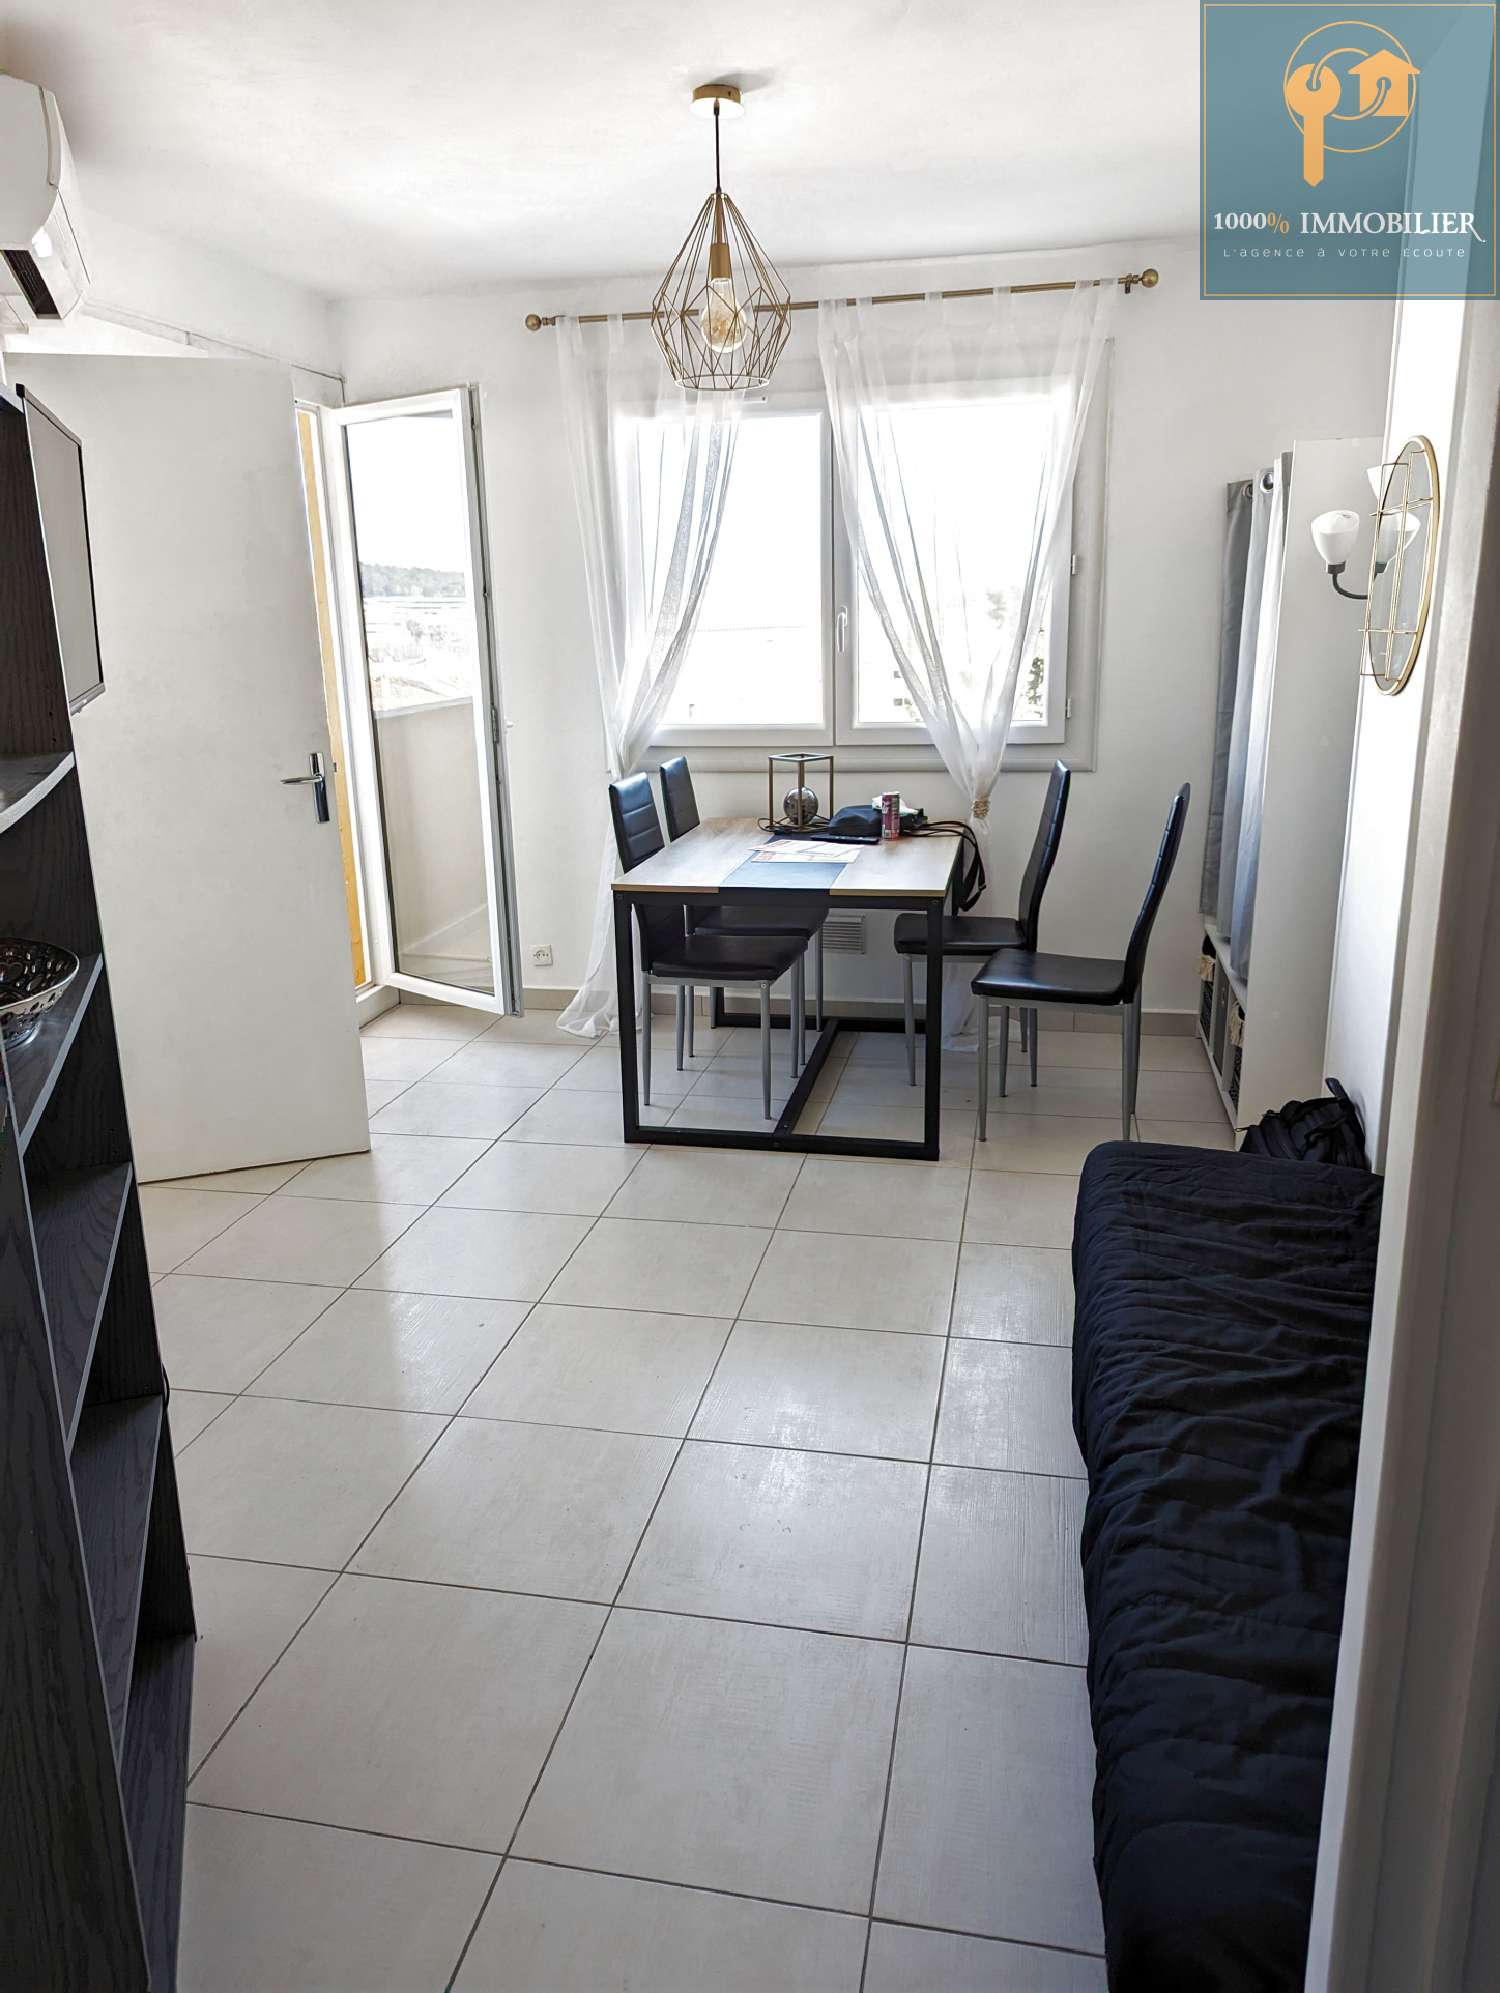  à vendre appartement Le Cap d'Agde Hérault 3